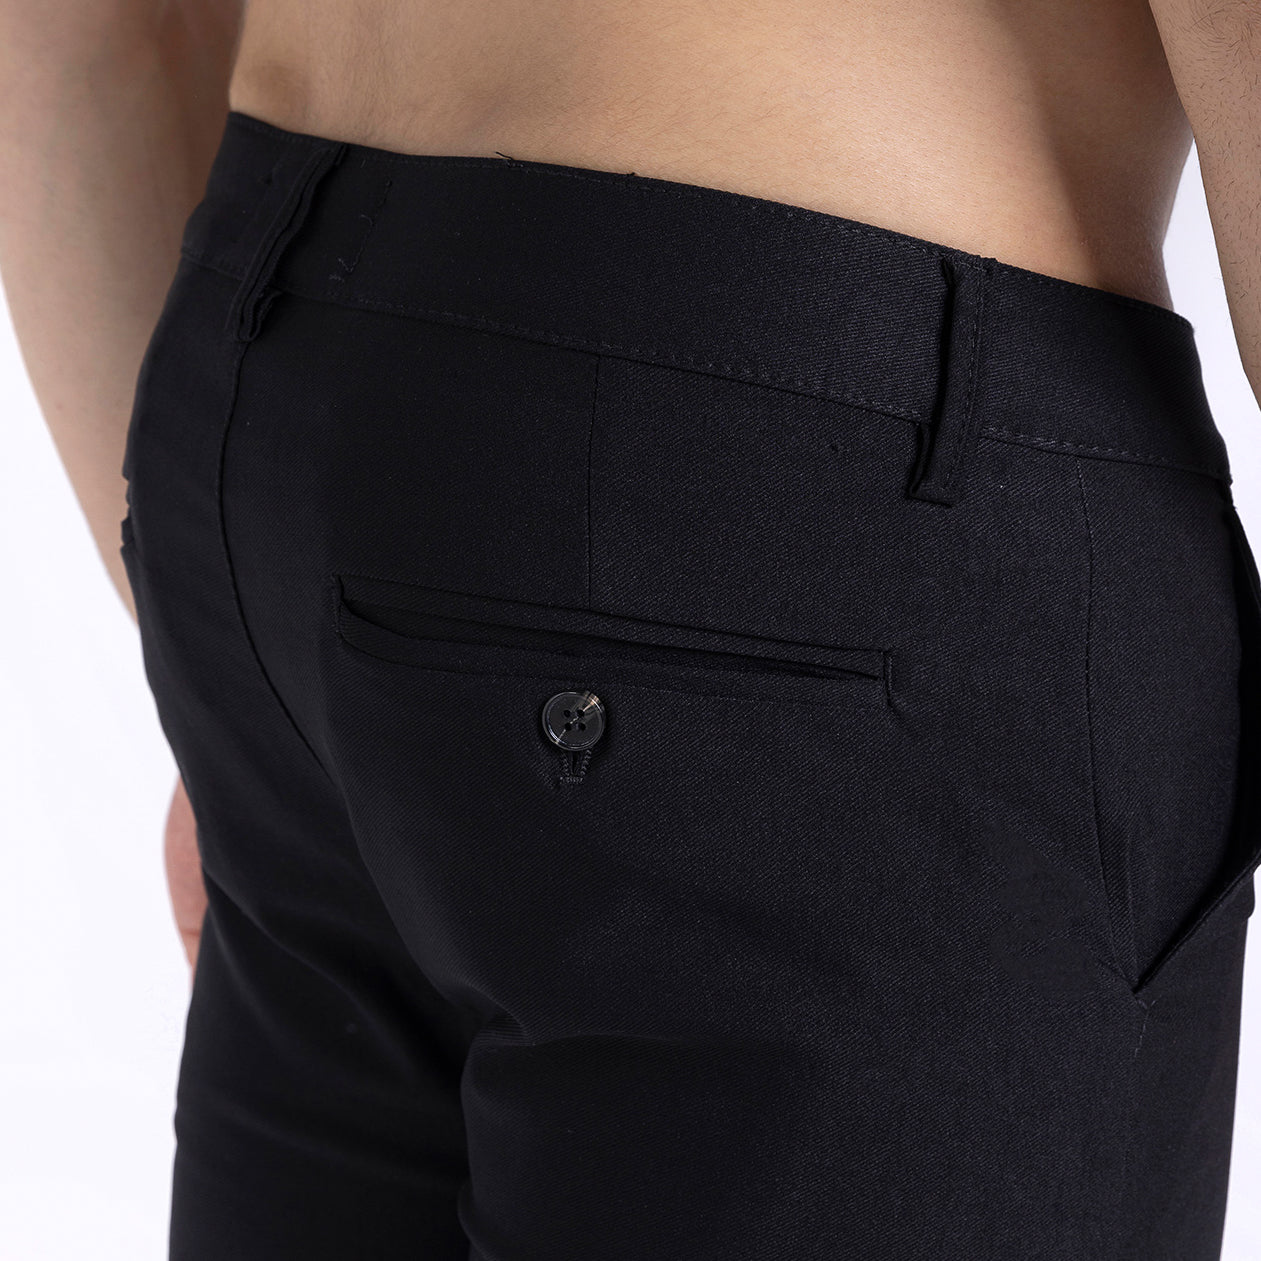 Essential Pants - Black